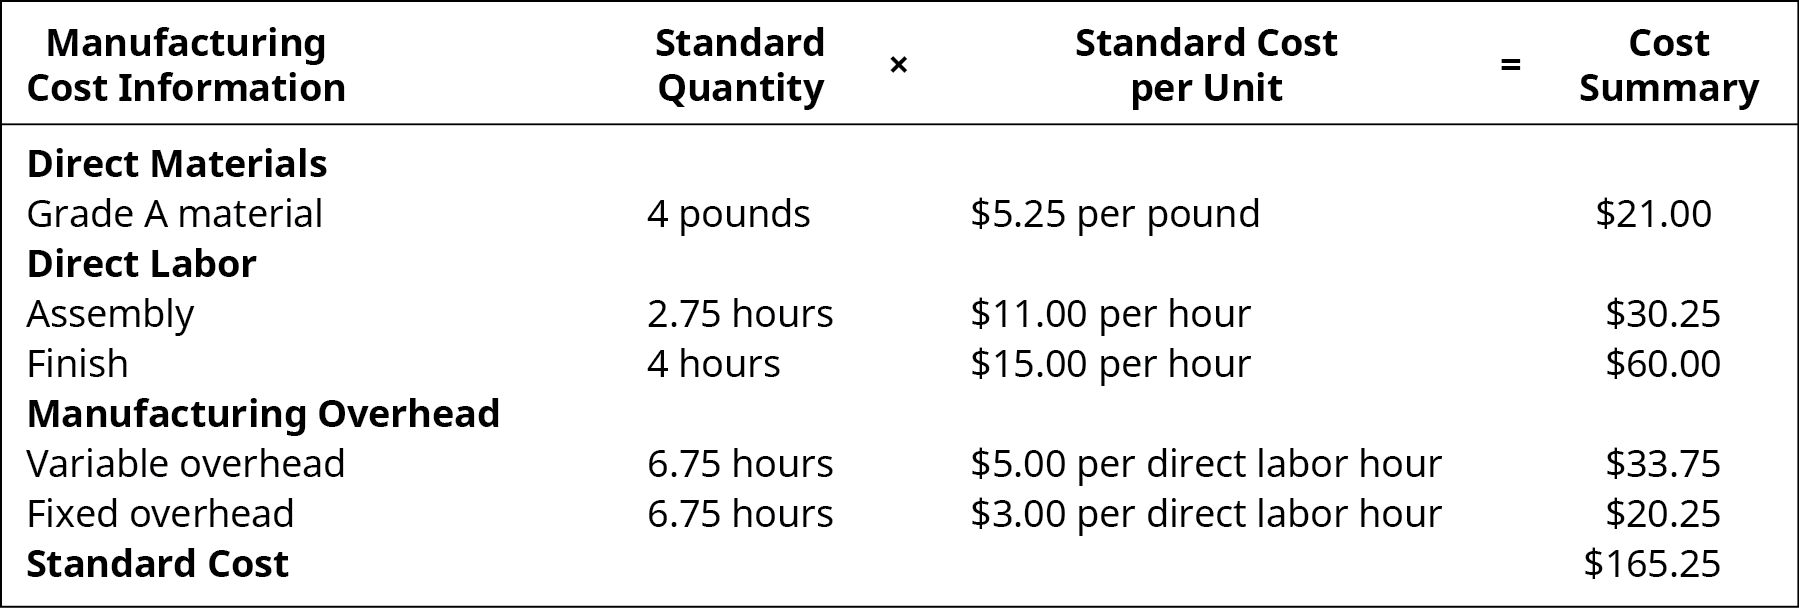 制造成本信息：标准数量乘以标准单位成本等于成本汇总。 直接材料 A 级材料，4 磅，每磅 5.25 美元，21.00 美元。 直接劳工大会，2.75小时，每小时11.00美元，30.25美元。 直接人工完成，4 小时，每小时 15.00 美元，60.00 美元。 制造开销变量，6.75 小时，每直接劳动小时 5.00 美元，33.75 美元。 固定制造开销，6.75 小时，每直接劳动小时 3.00 美元，20.25 美元。 标准成本，-，-，165.25 美元。